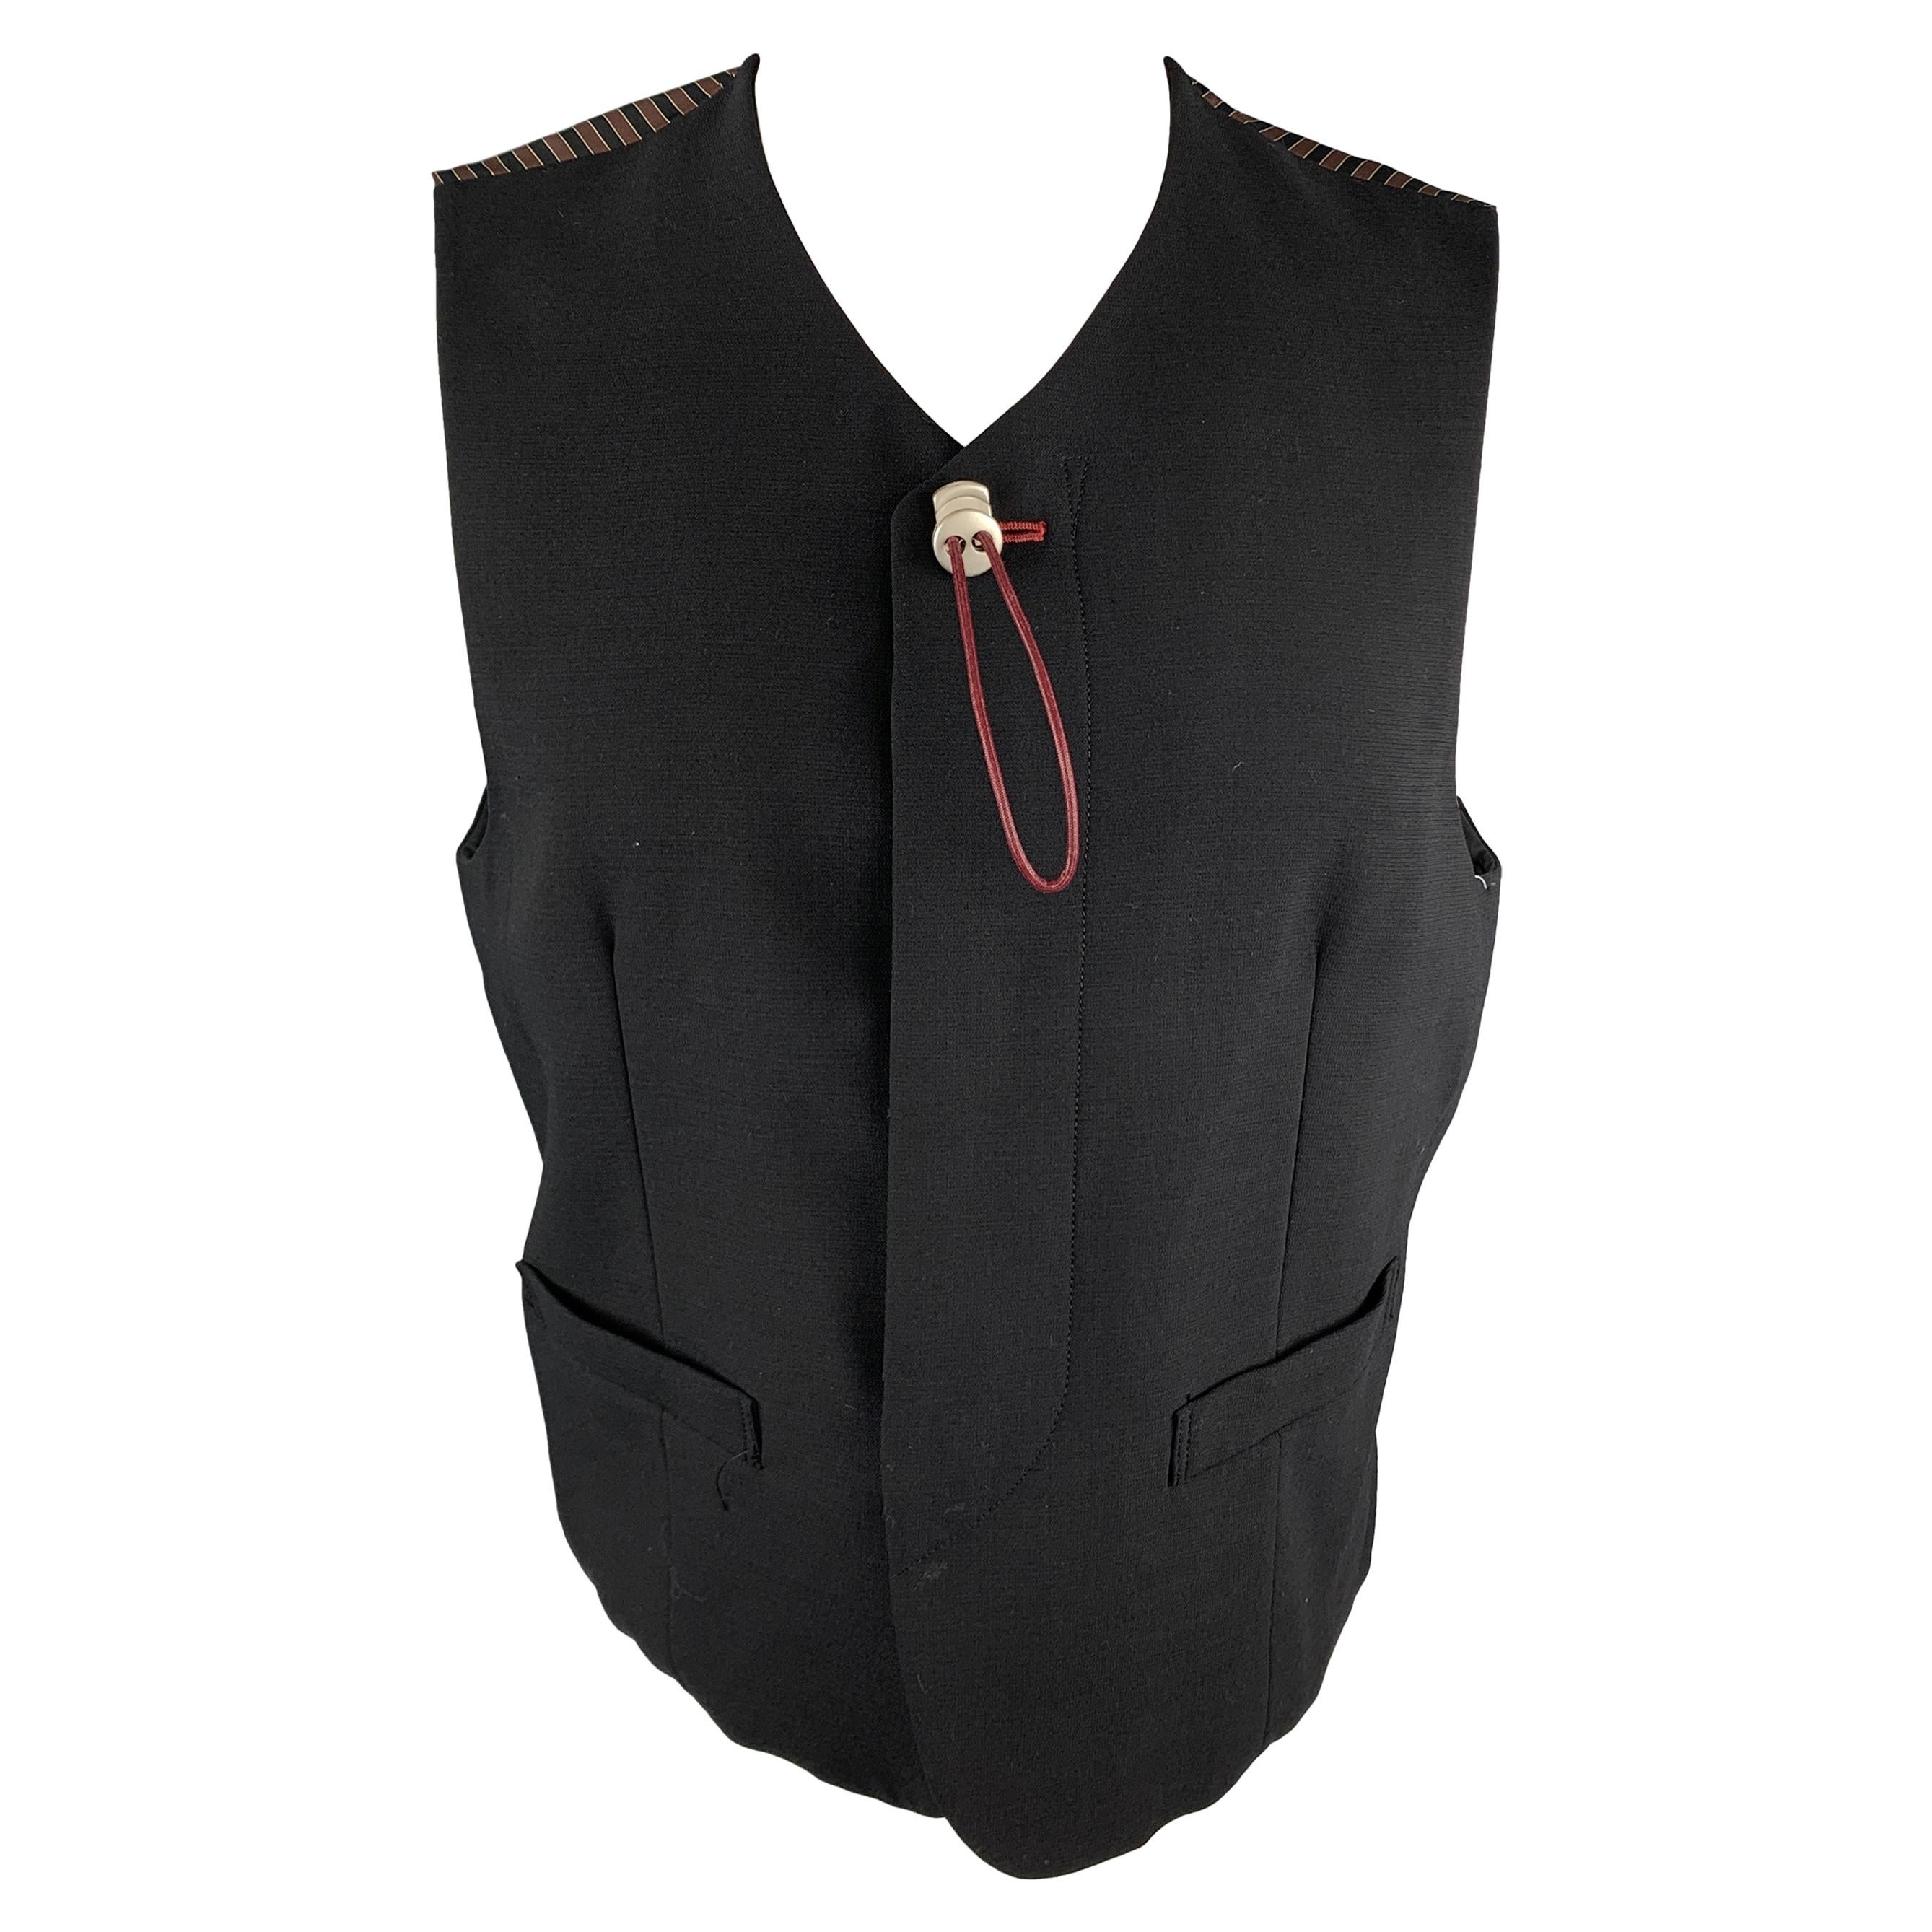 NICOLE CLUB FOR MEN Size M Black Crepe Buttoned Vest